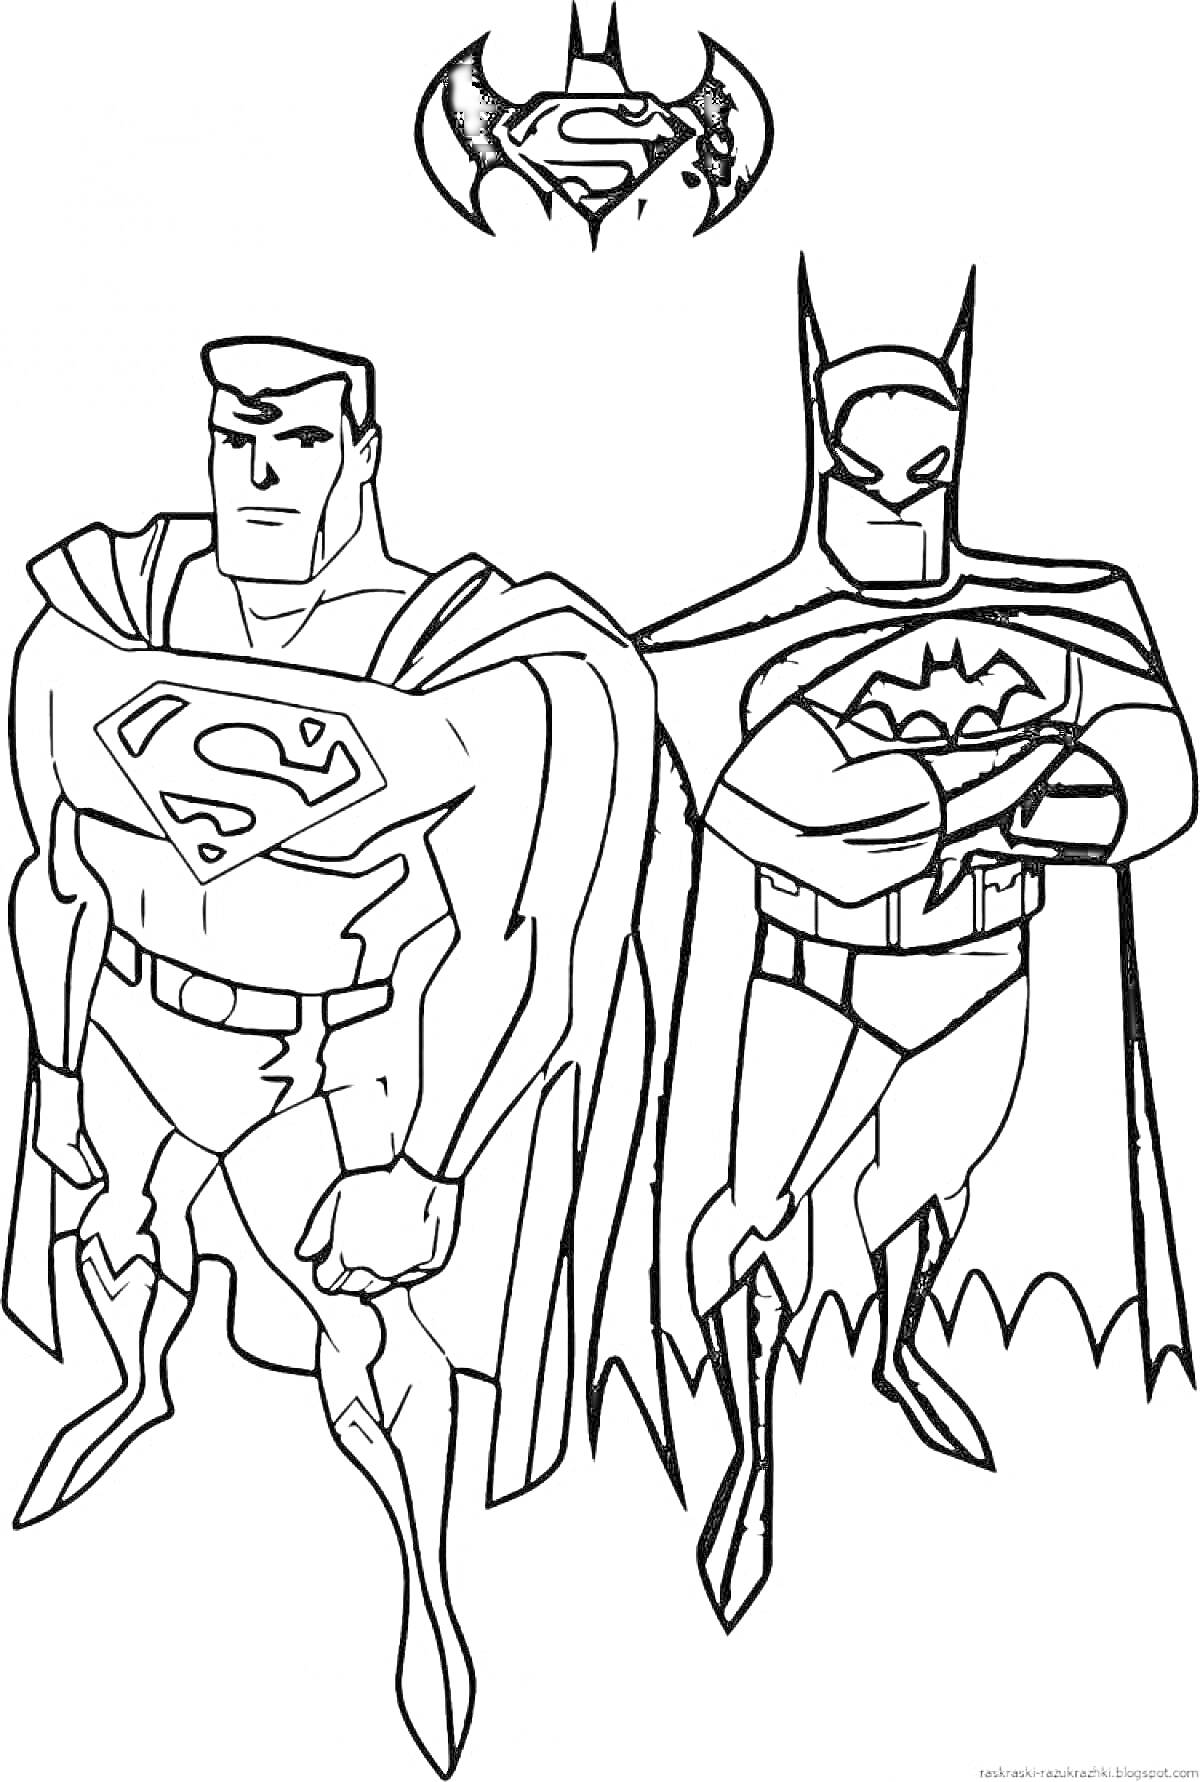 Раскраска Супергерои - два персонажа в плащах (супергерой с буквой S на груди и супергерой с маской и логотипом летучей мыши), символ в виде летучей мыши с буквой S на фоне.